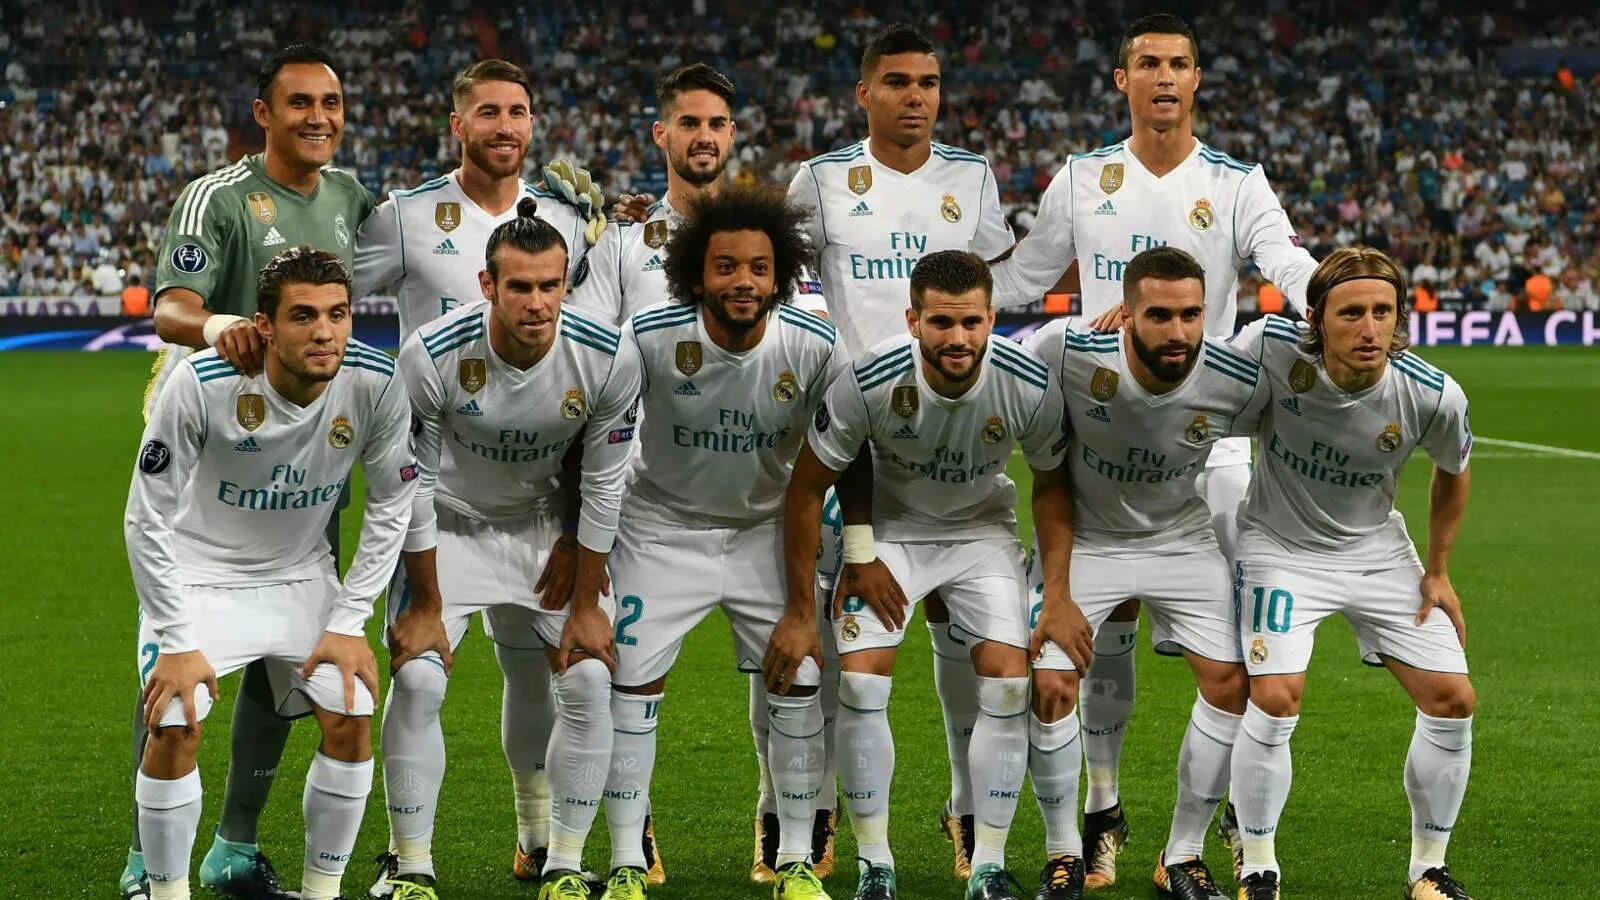 1 18 2017. Команда Реал Мадрид с Роналду. Реал Мадрид Роналдо с командой. Состав Реал Мадрида с Роналдо. Команда Реал Мадрид 2017 с Роналду.